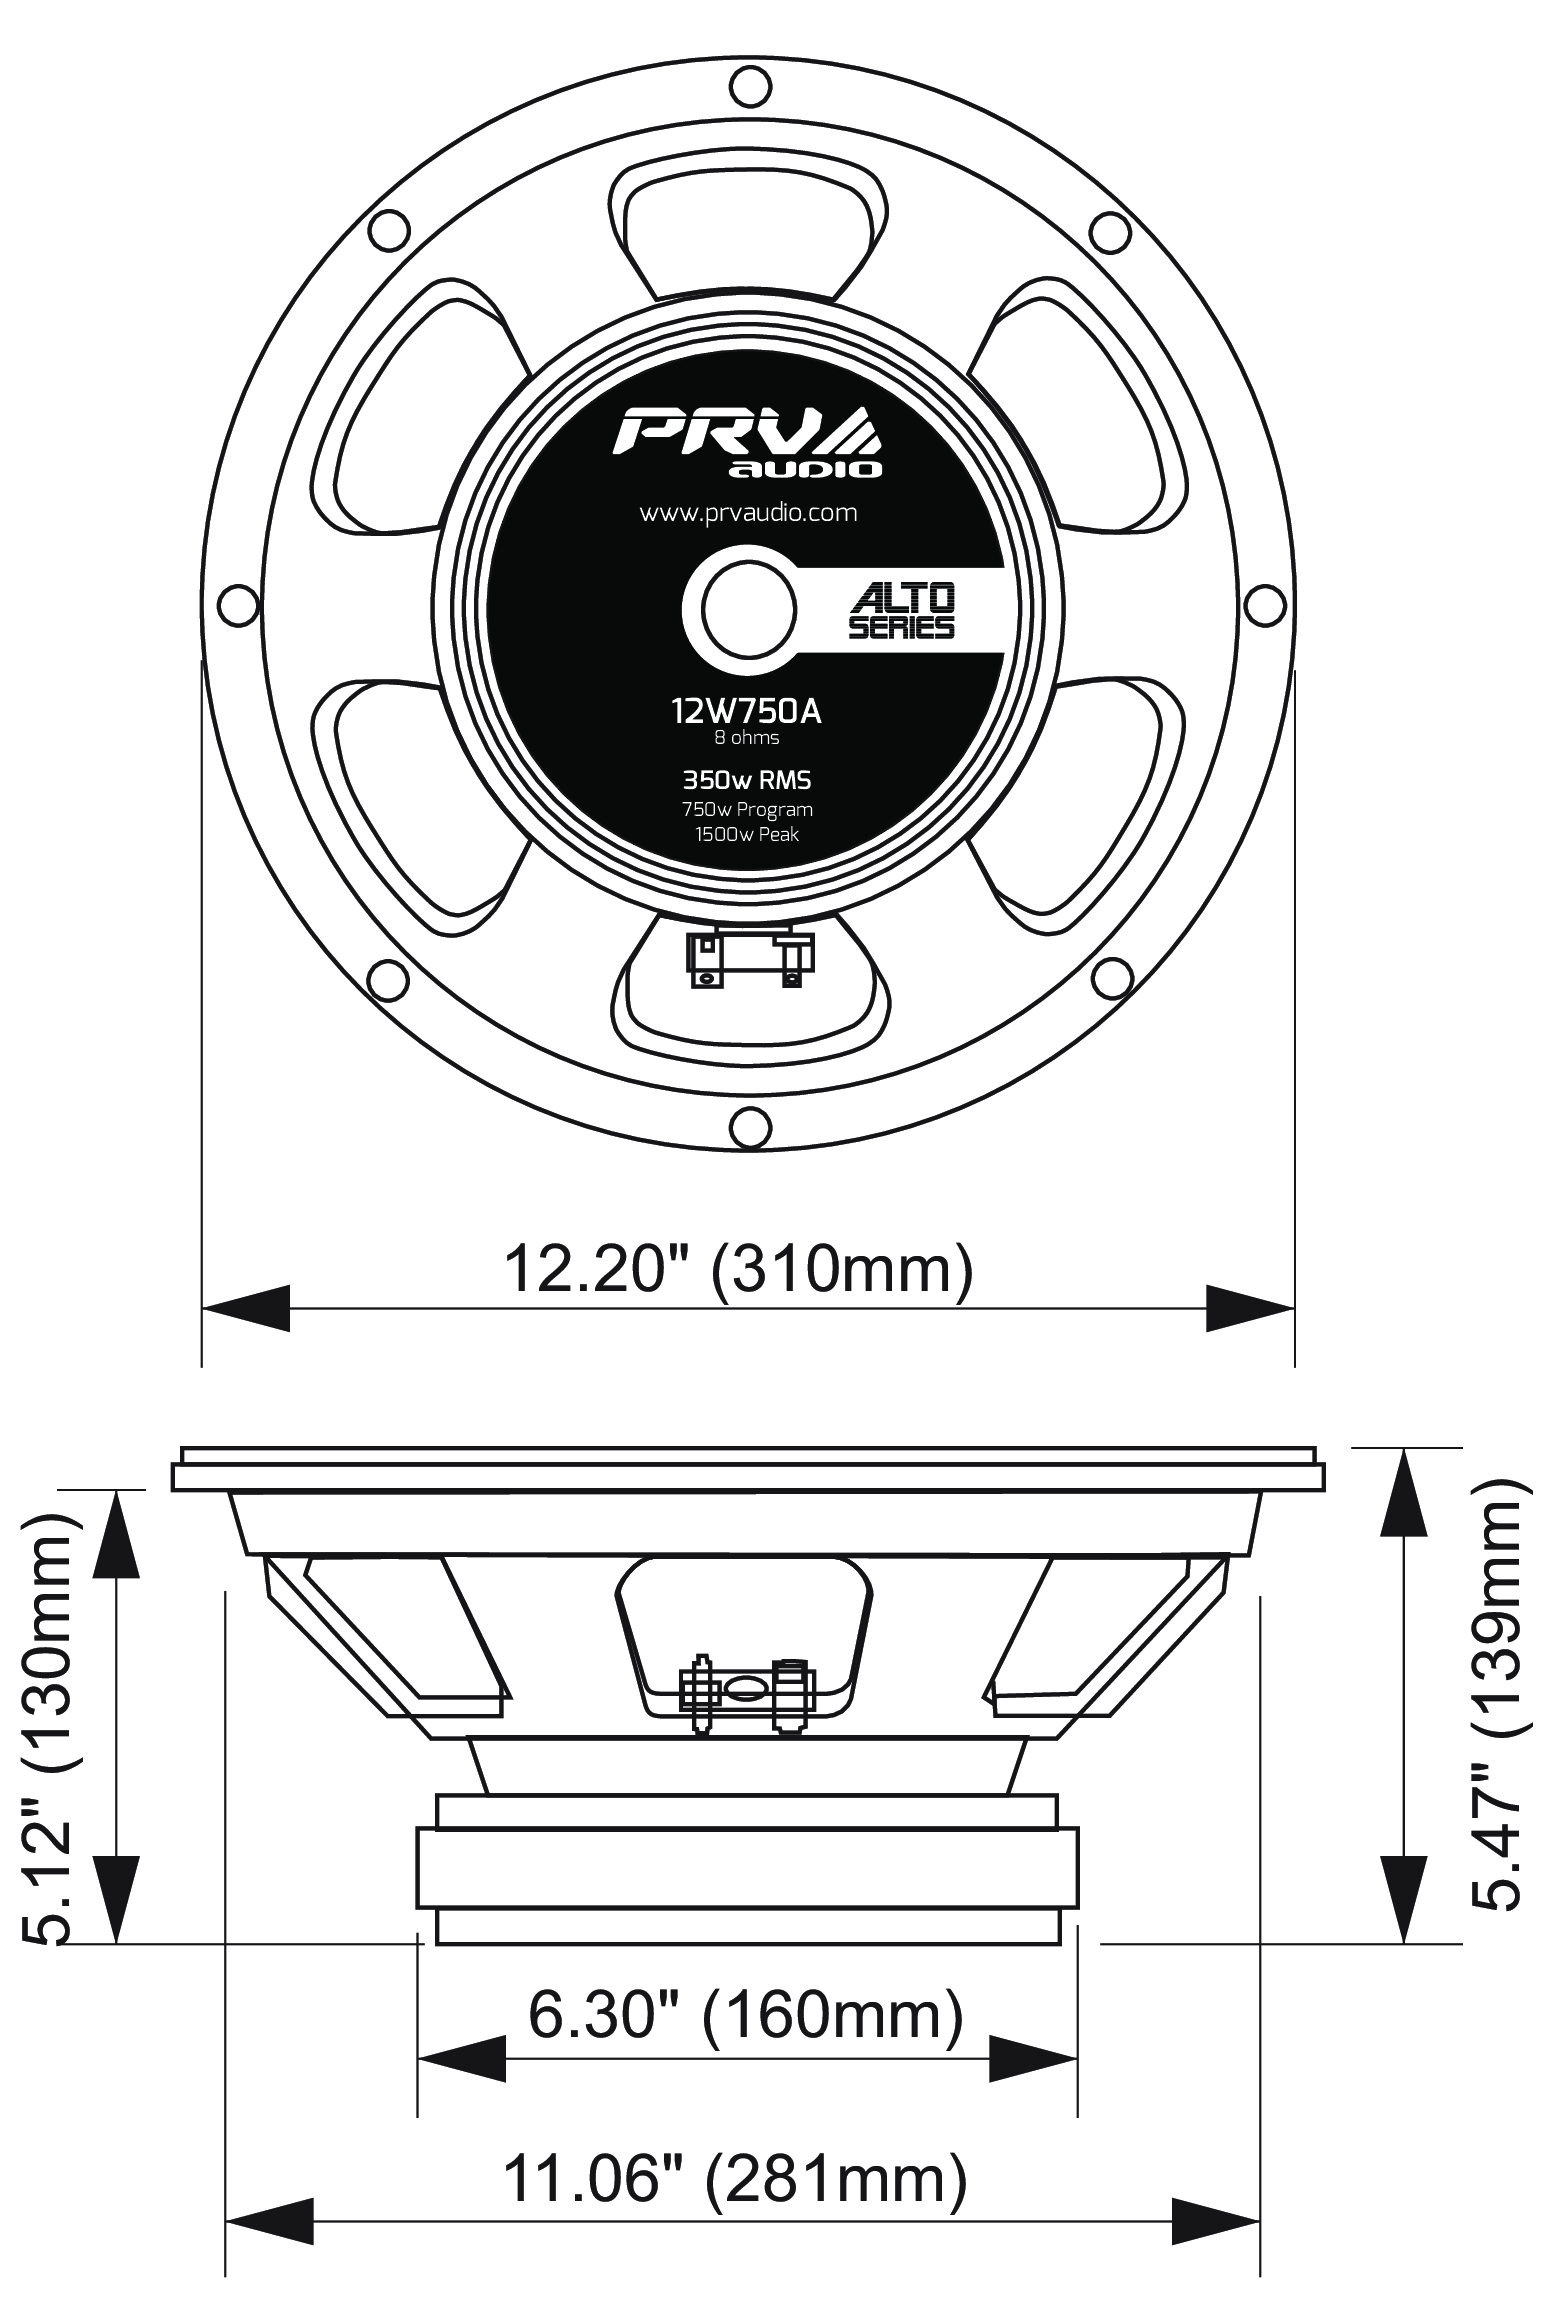 PRV Audio 12W750A Dimensions